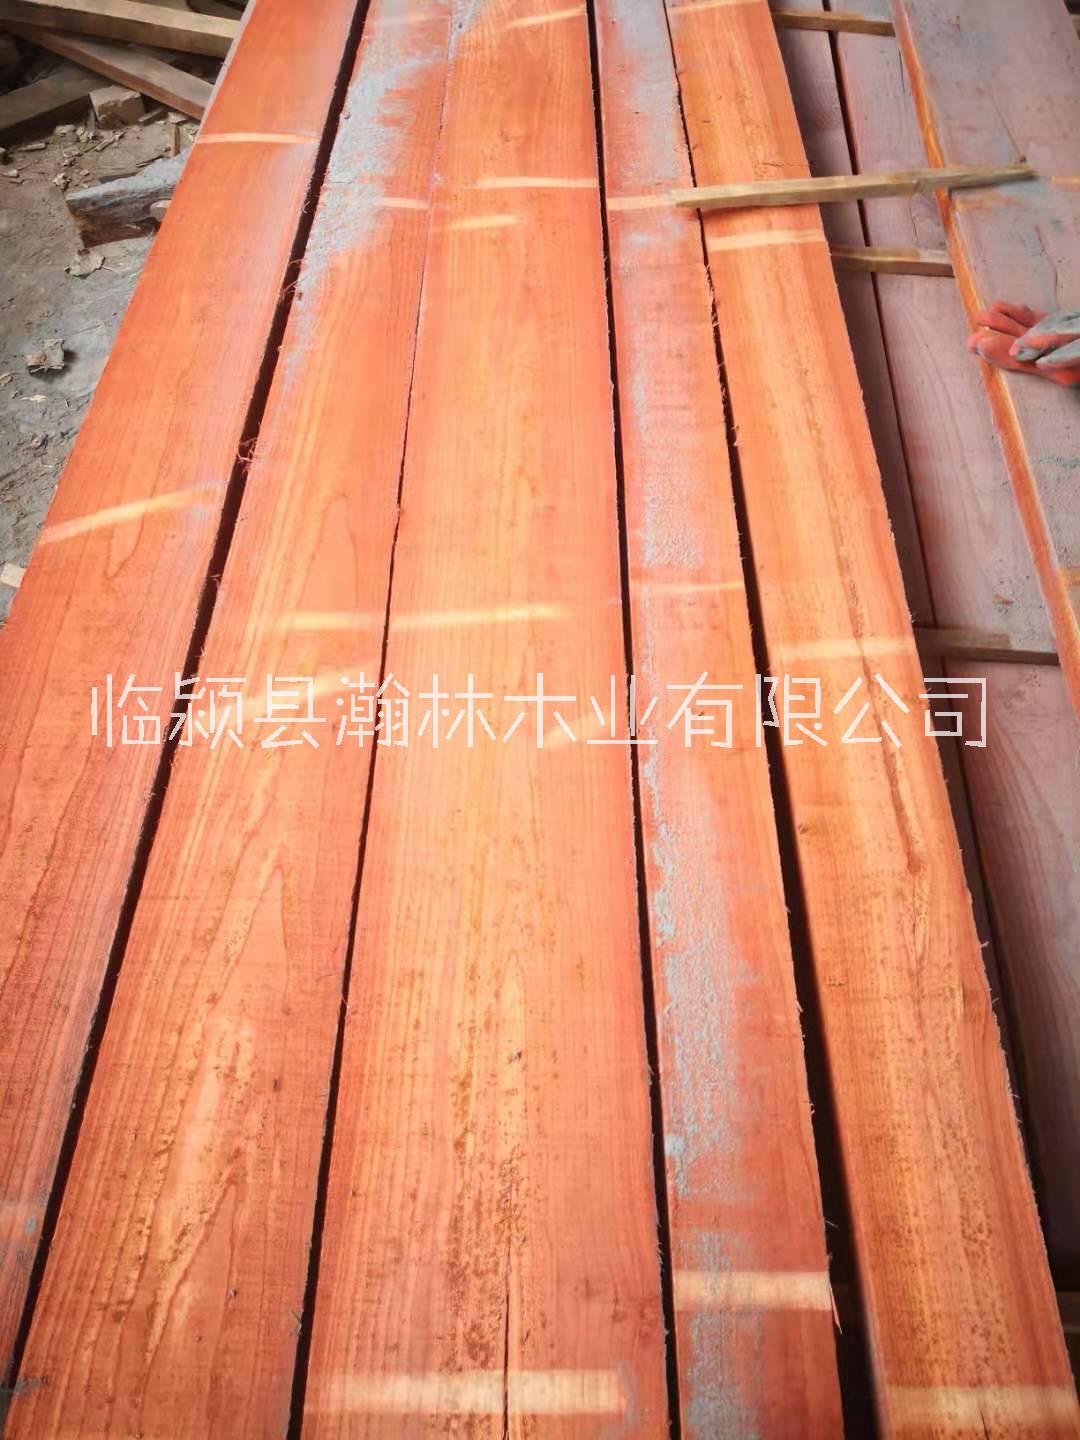 红椿木烘干板材 烘干板材价格 烘干板材厂家 烘干木板材